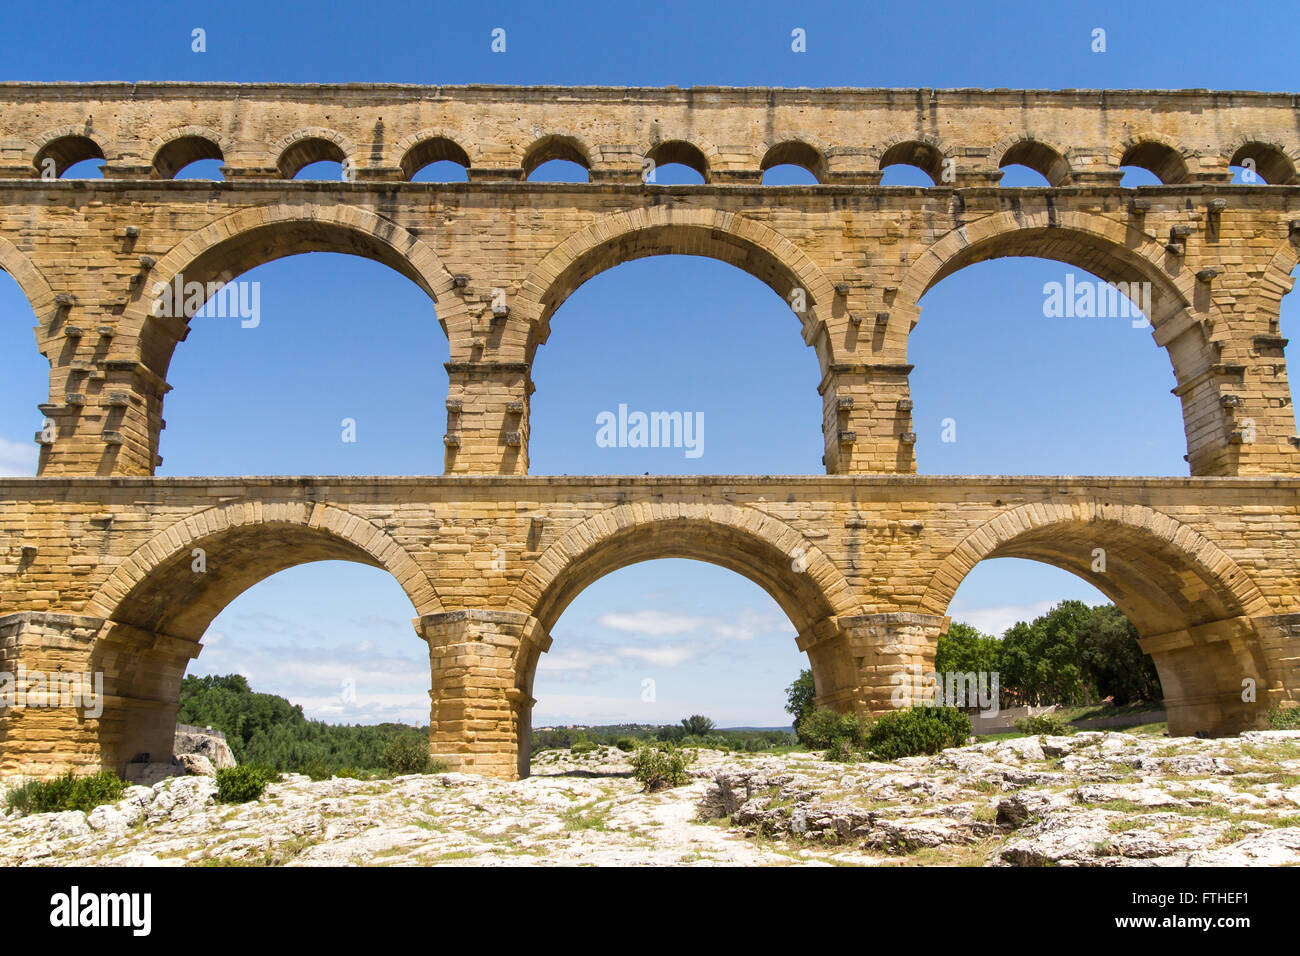 El Pont du Gard (vista frontal) es un antiguo acueducto romano puente que cruza el río Gardon, en el sur de Francia. Foto de stock